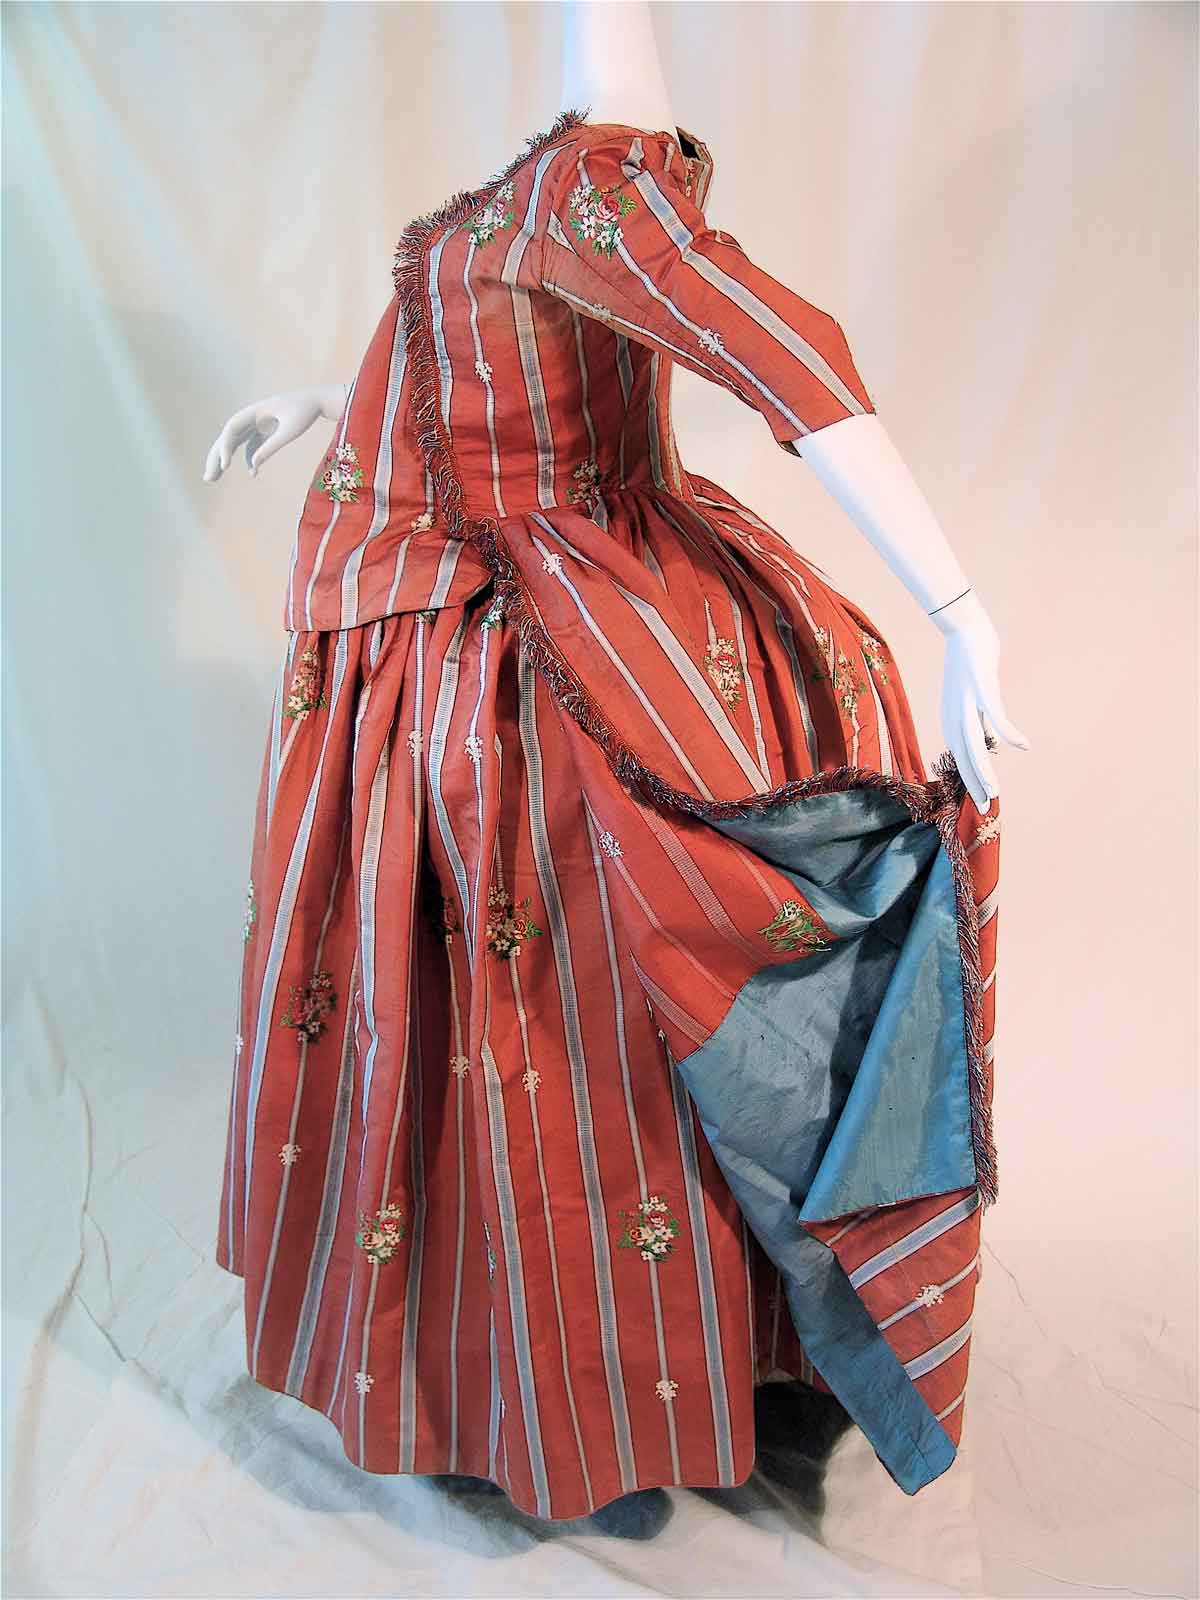 französisches Schwangerschaftskleid aus Seidenbrokat, um 1775/80 (Foto: Galerie Ruf AG)